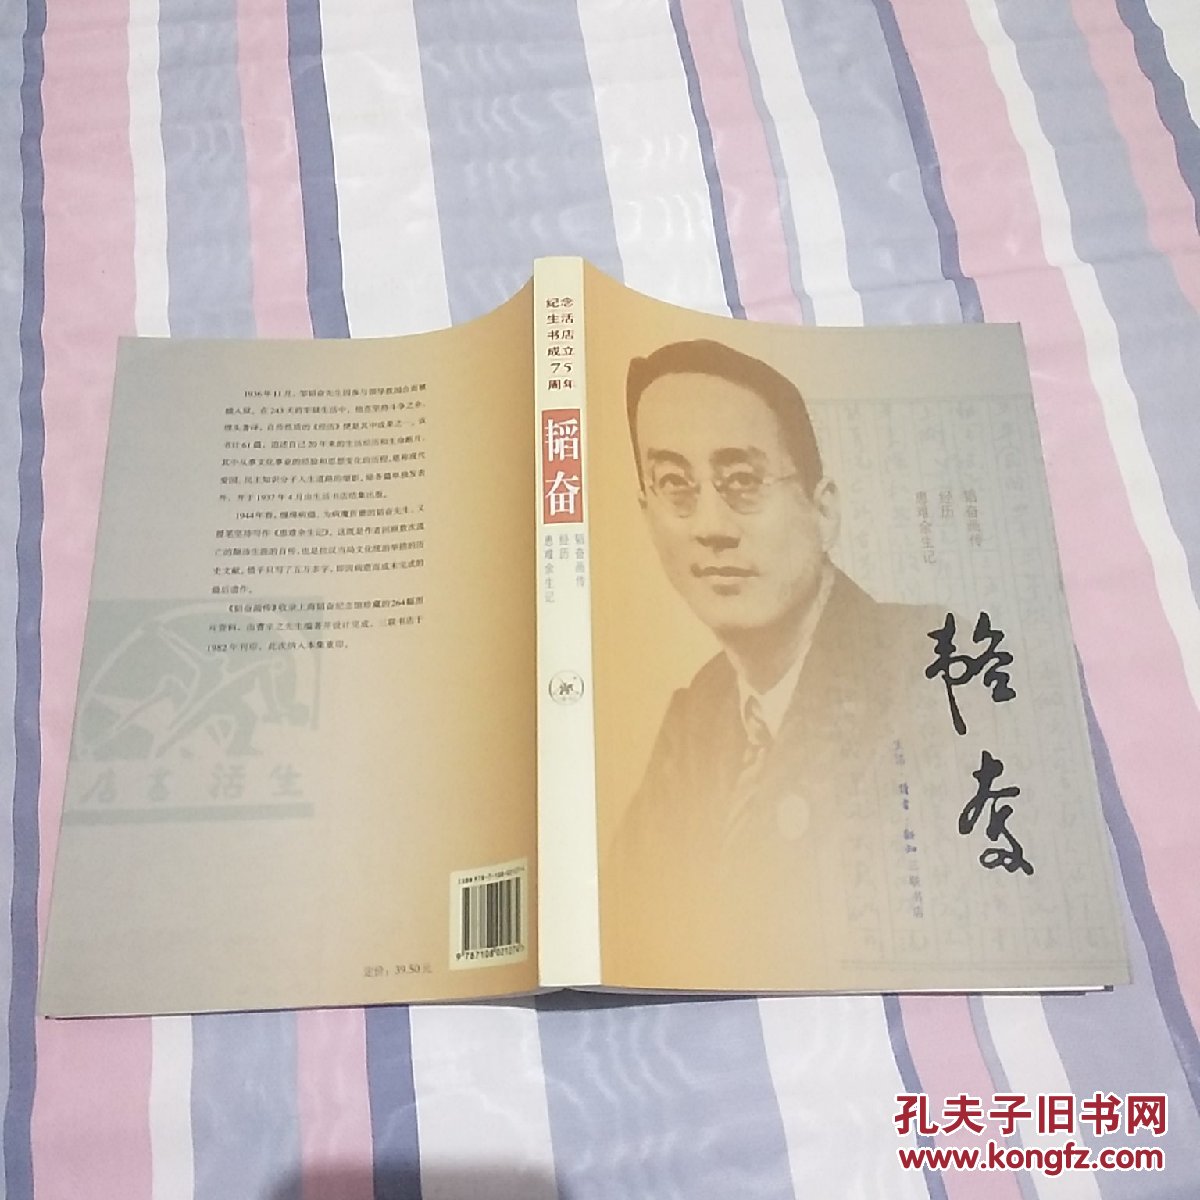 韬奋-纪念生活书店成立75周年